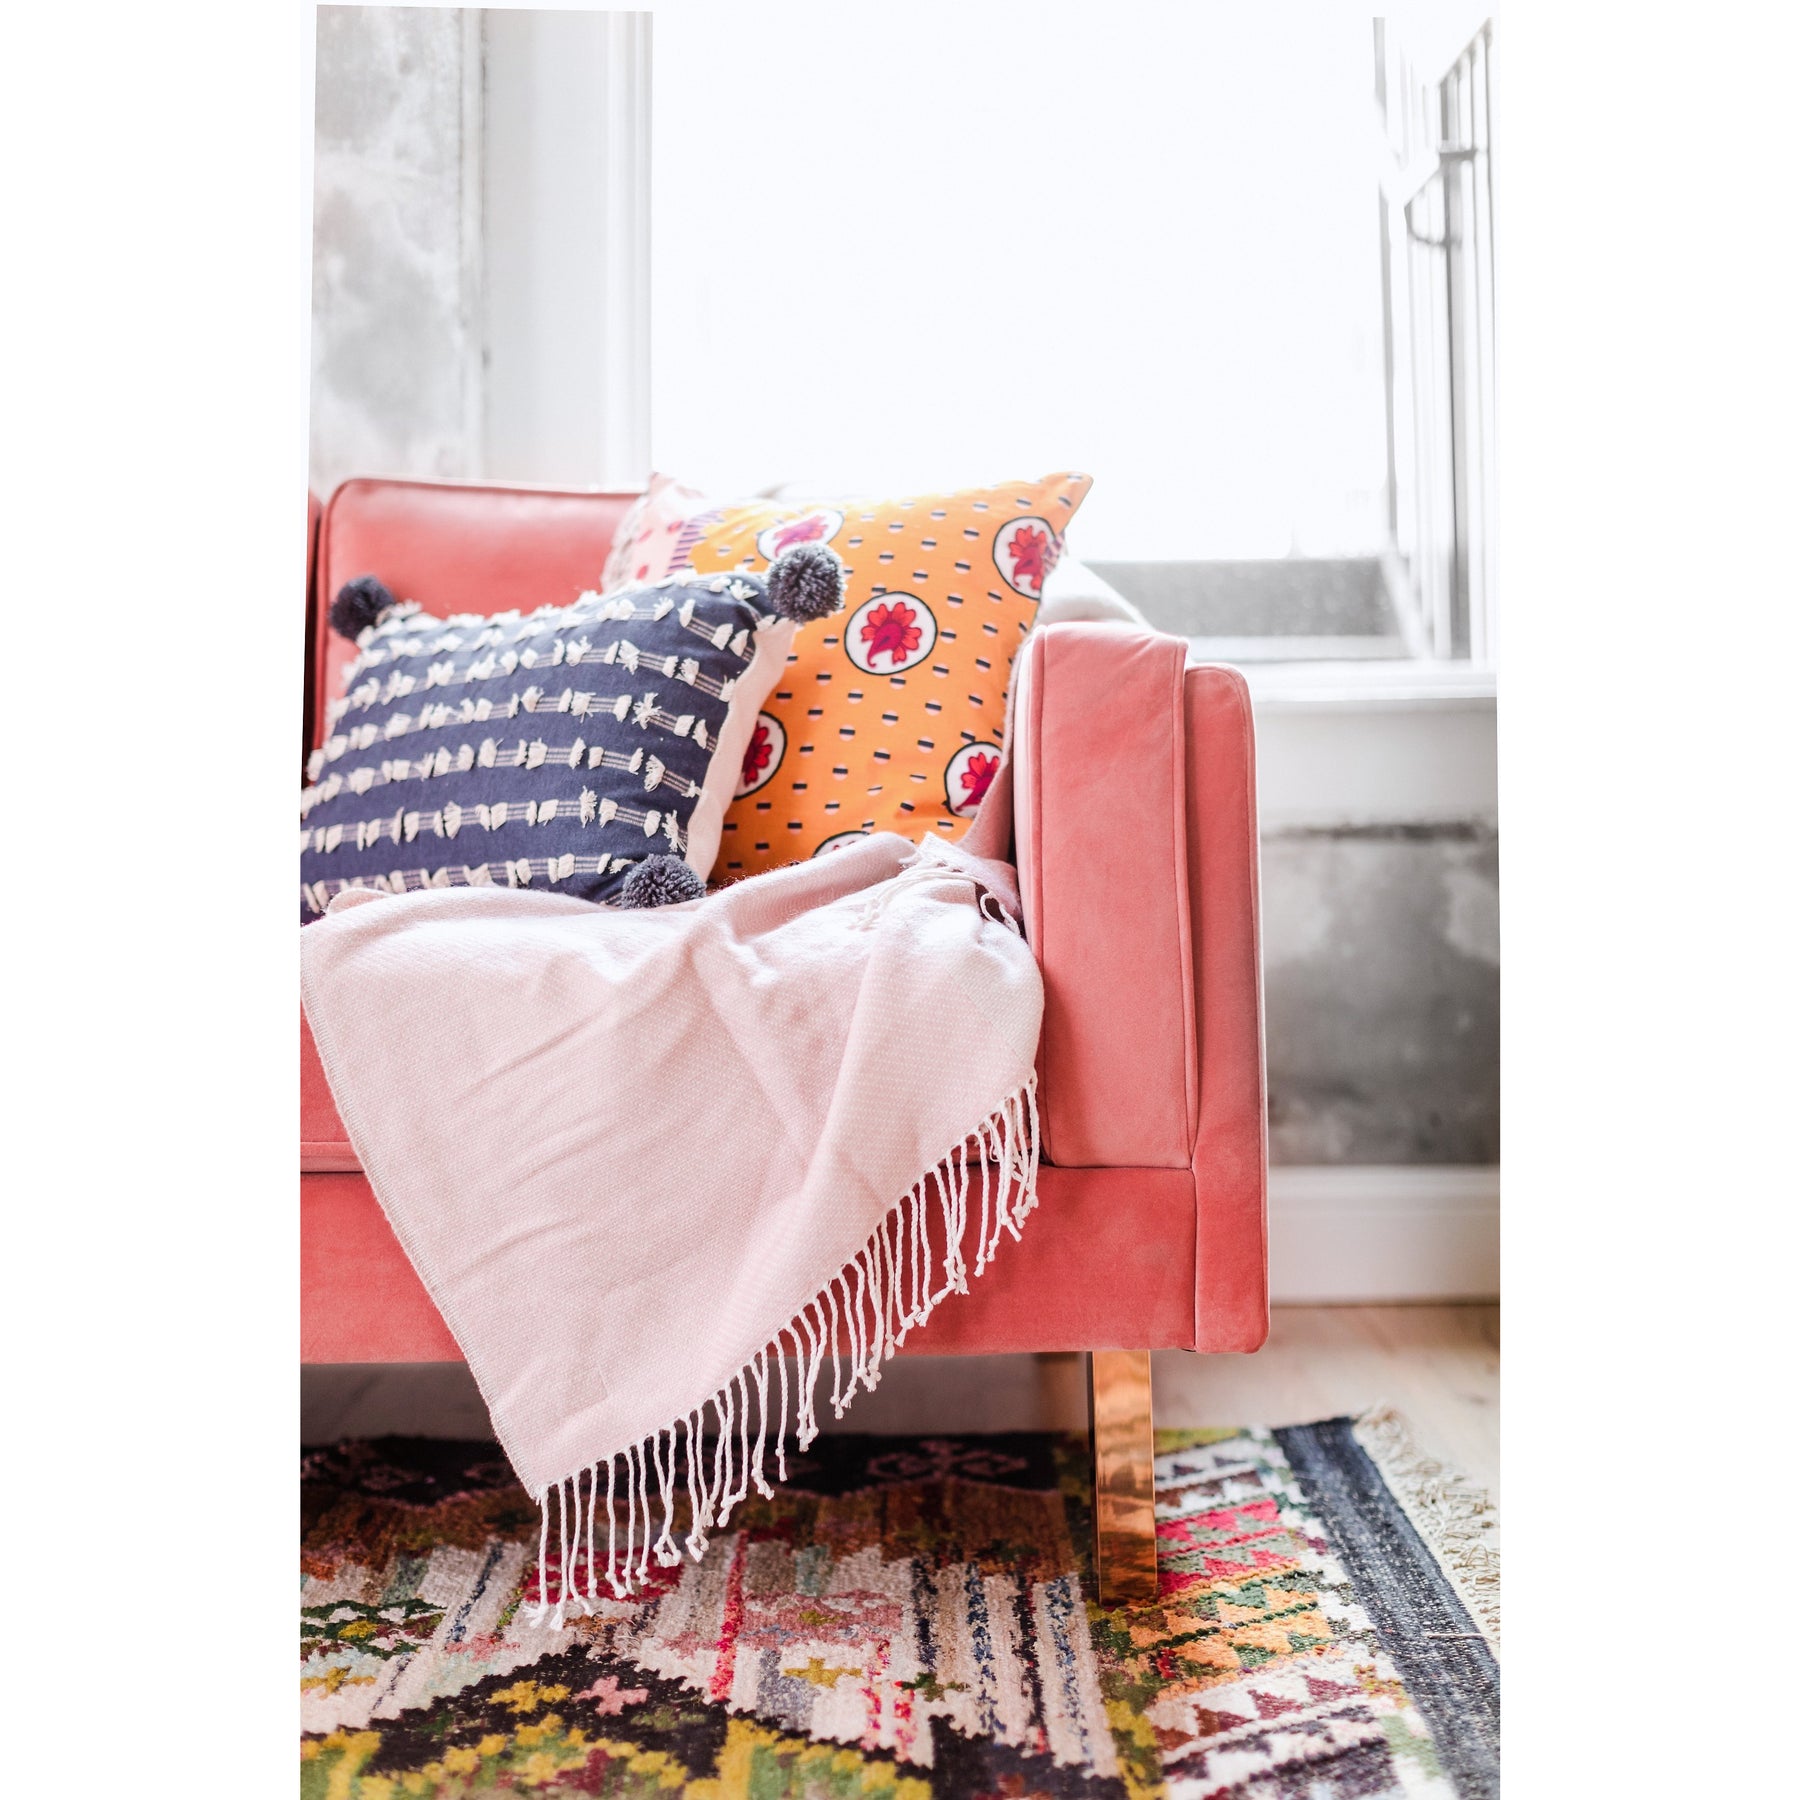 Edloe Finch Lexington Mid-Century Modern Velvet Sofa, Blush Pink Velvet